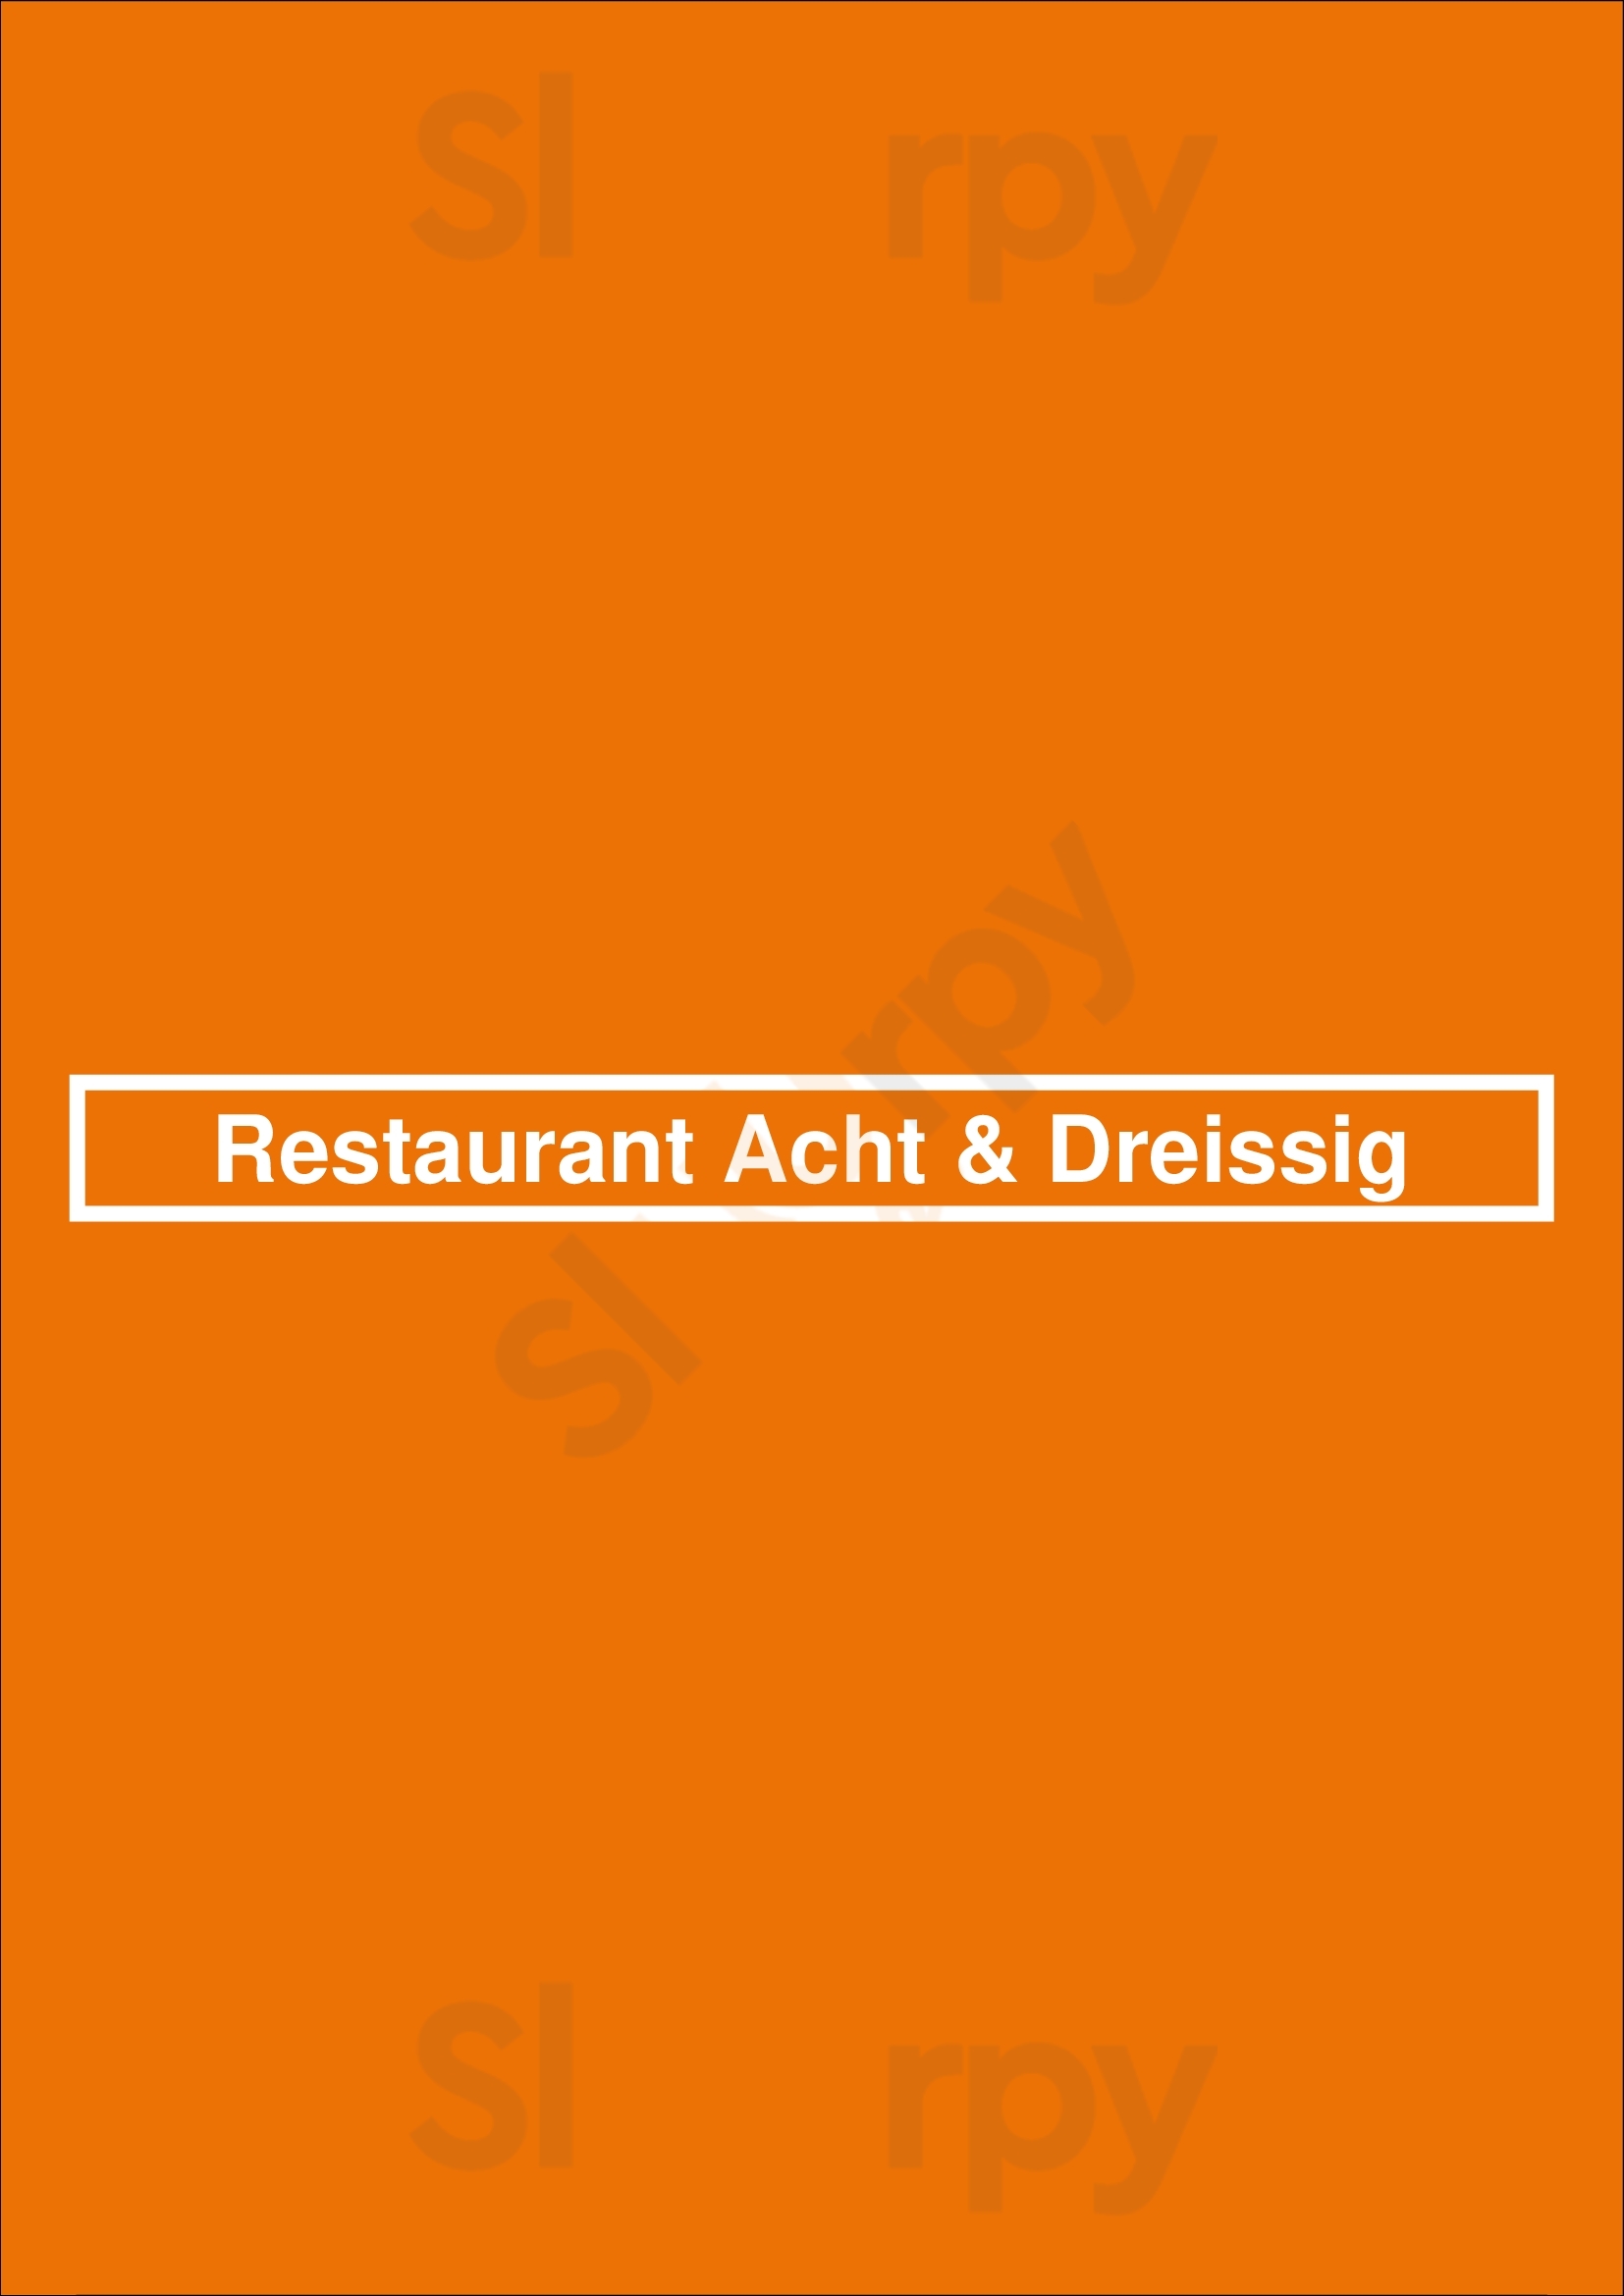 Restaurant Acht & Dreissig Berlin Menu - 1